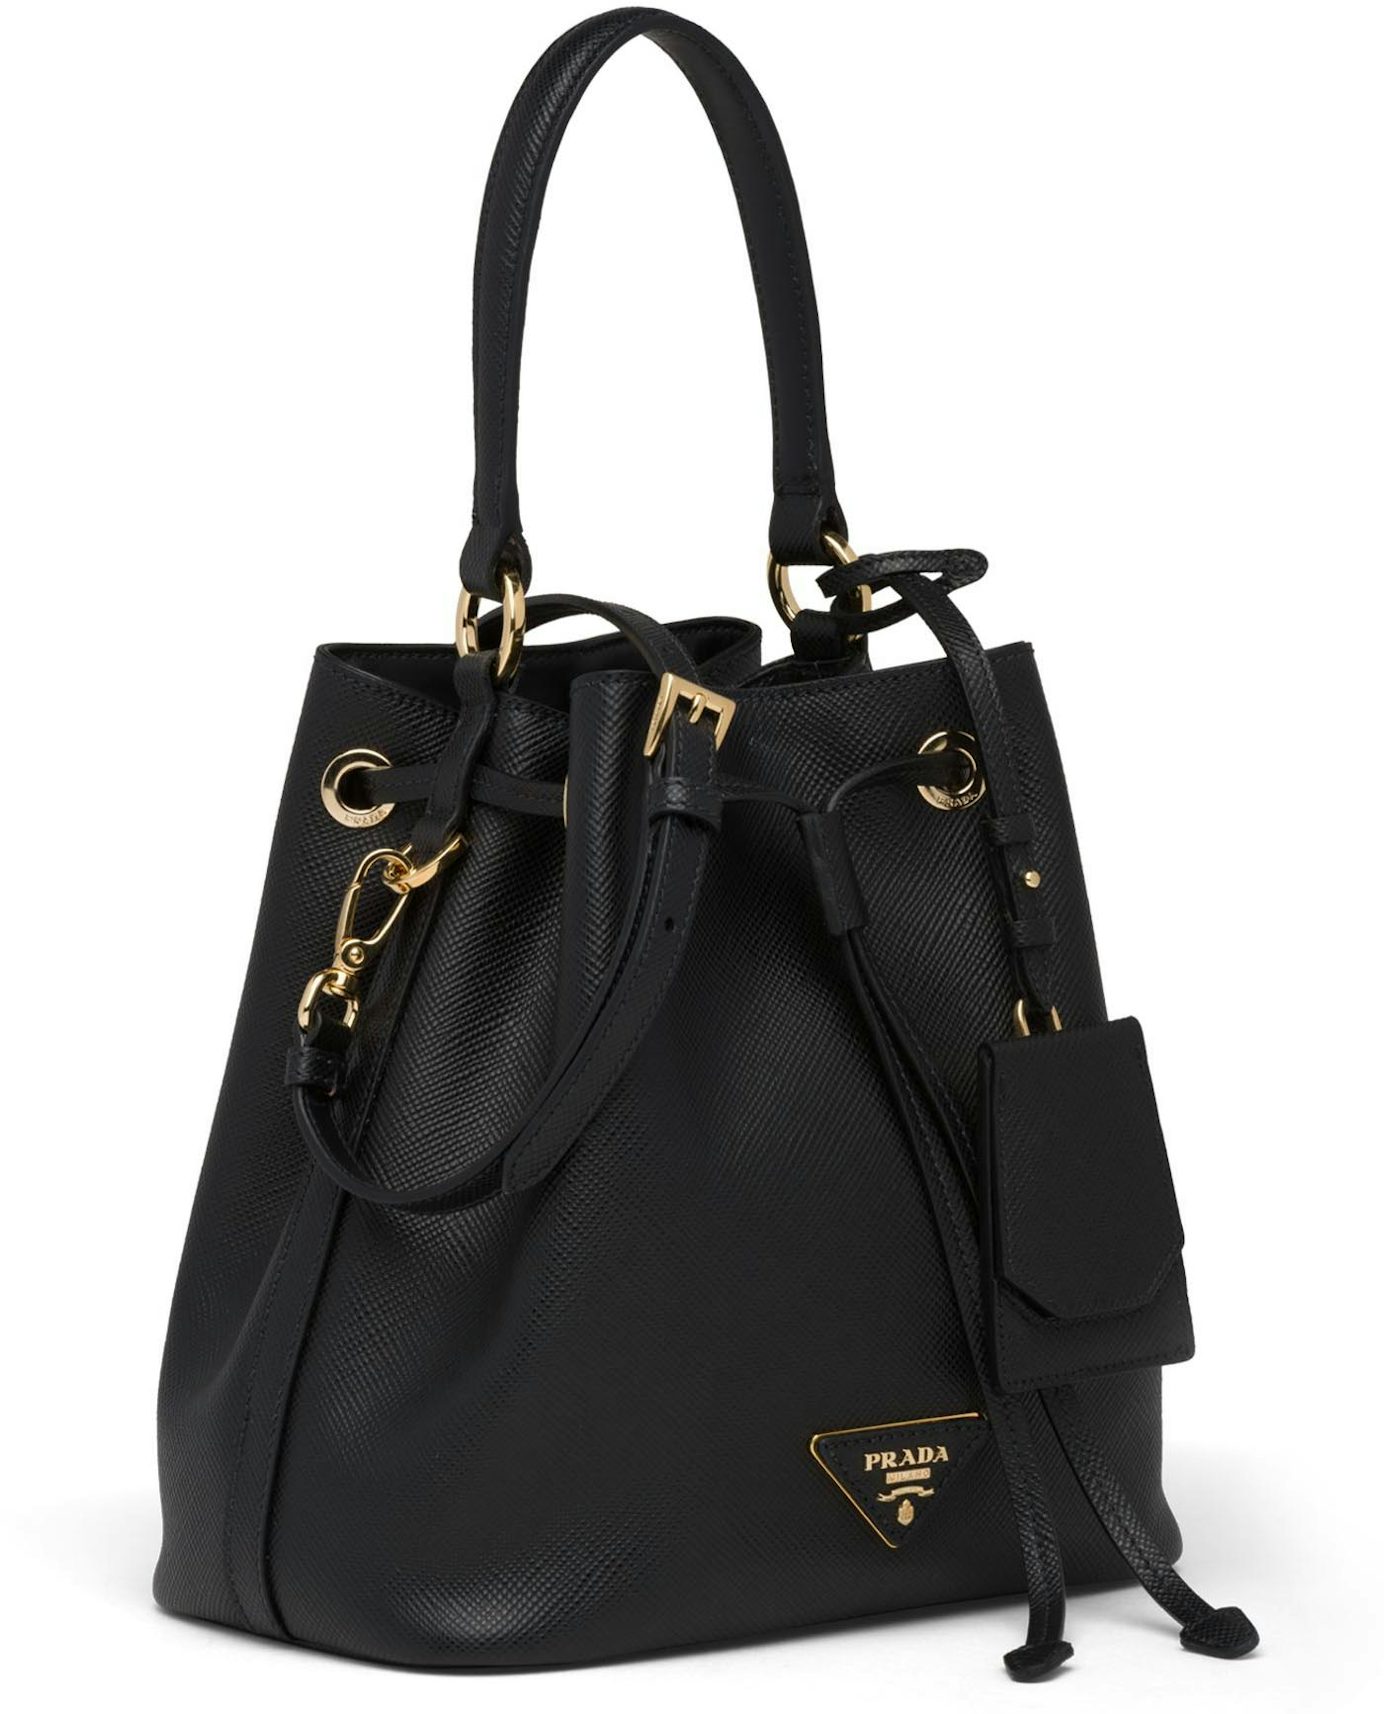 Prada Leather Shoulder Bag Gold-tone Black